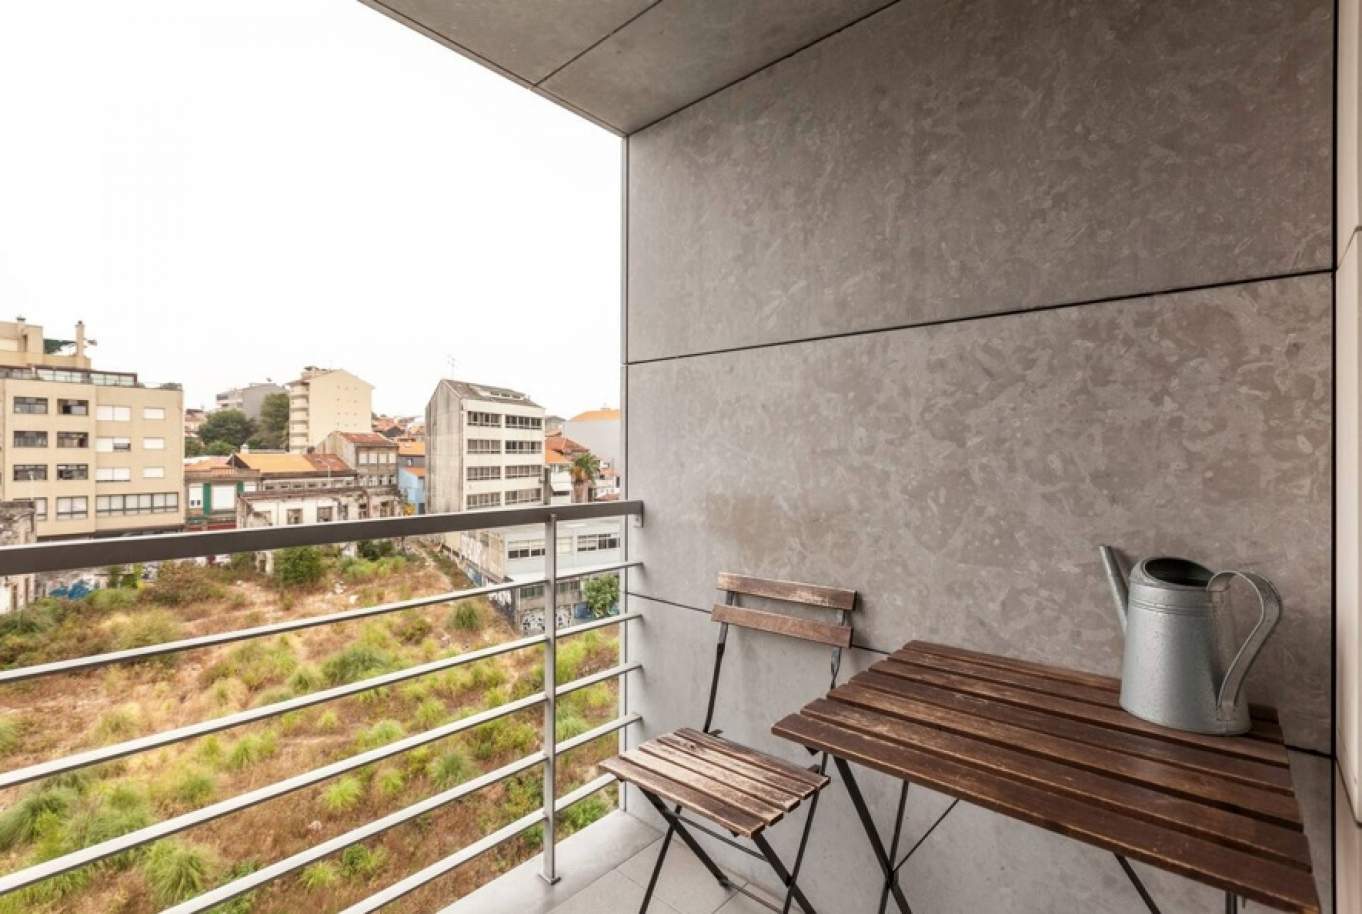 Wohnung mit Balkon, zu verkaufen, in Cedofeita, Porto, Portugal_177510